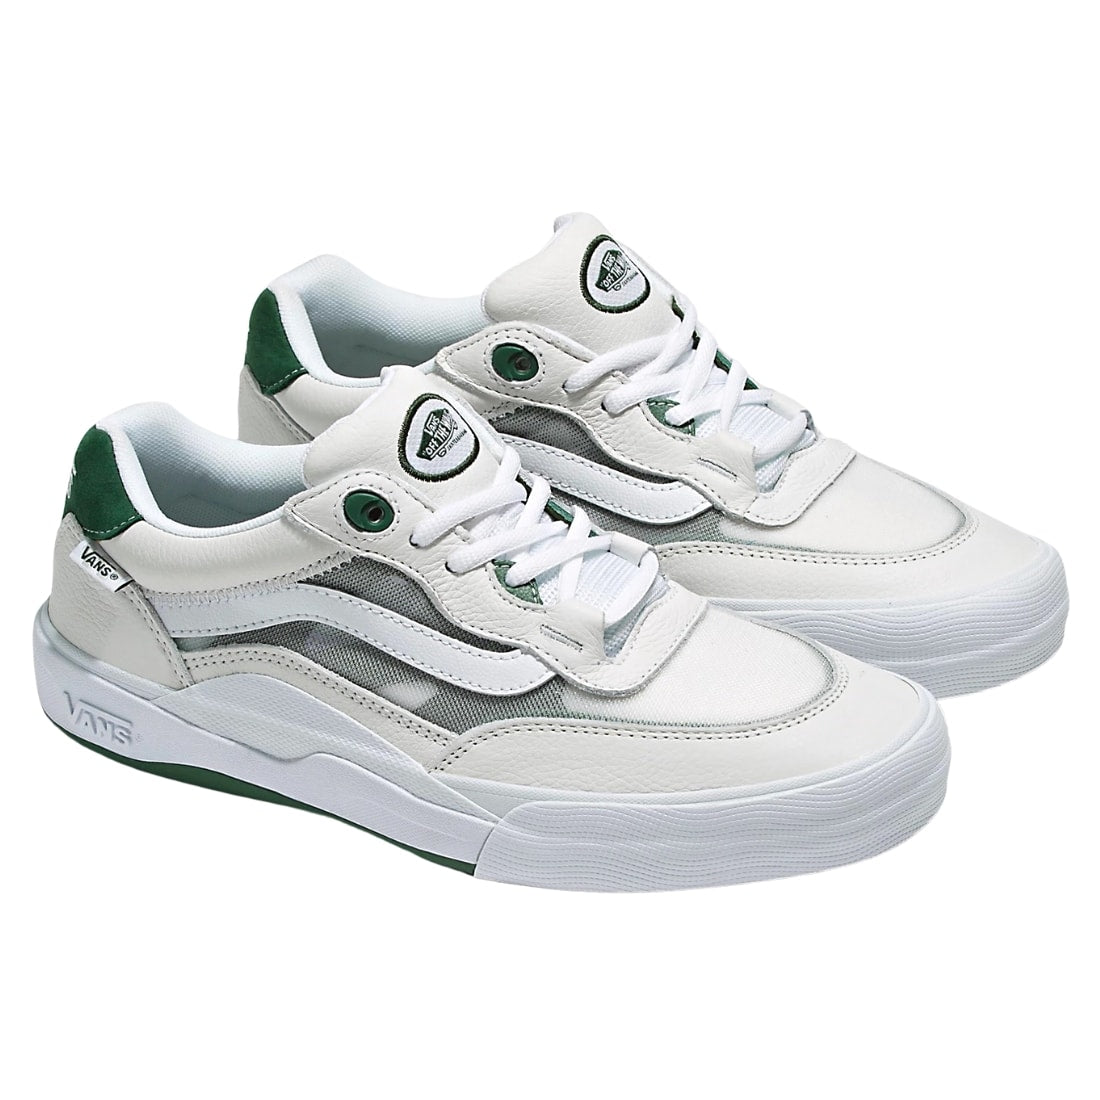 Vans Wayvee Skate Shoes - White/Green - Mens Skate Shoes by Vans